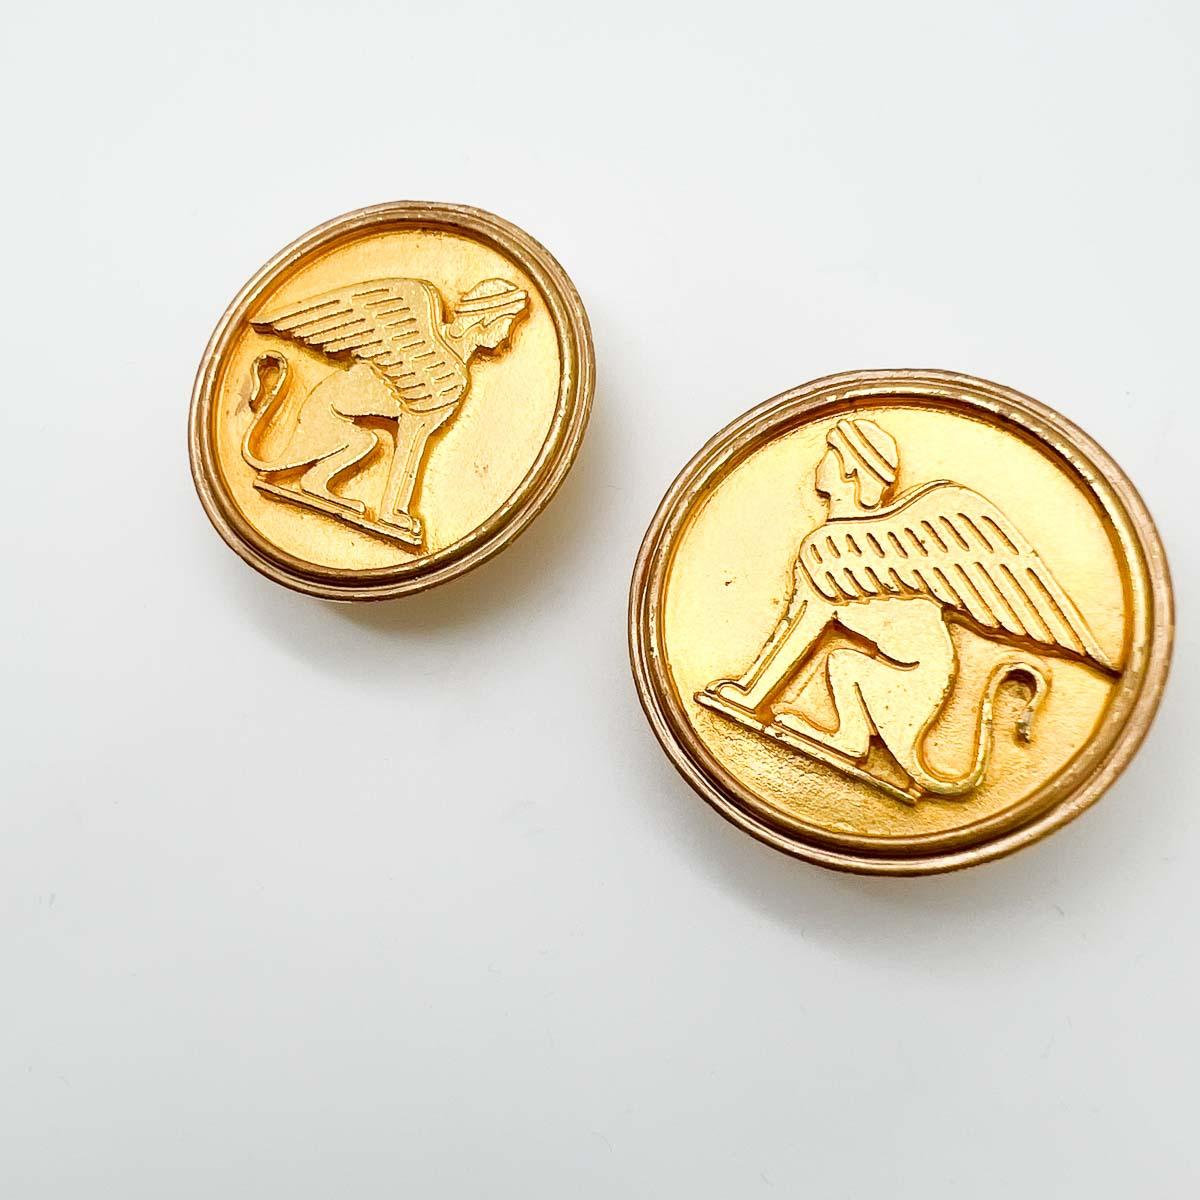 Boucles d'oreilles vintage en forme de sphinx égyptien, fabriquées avec une riche finition de plaque d'or à haute teneur en carats. Un style audacieux en or qui véhicule des histoires issues de milliers d'années d'histoire mythologique.

Une beauté